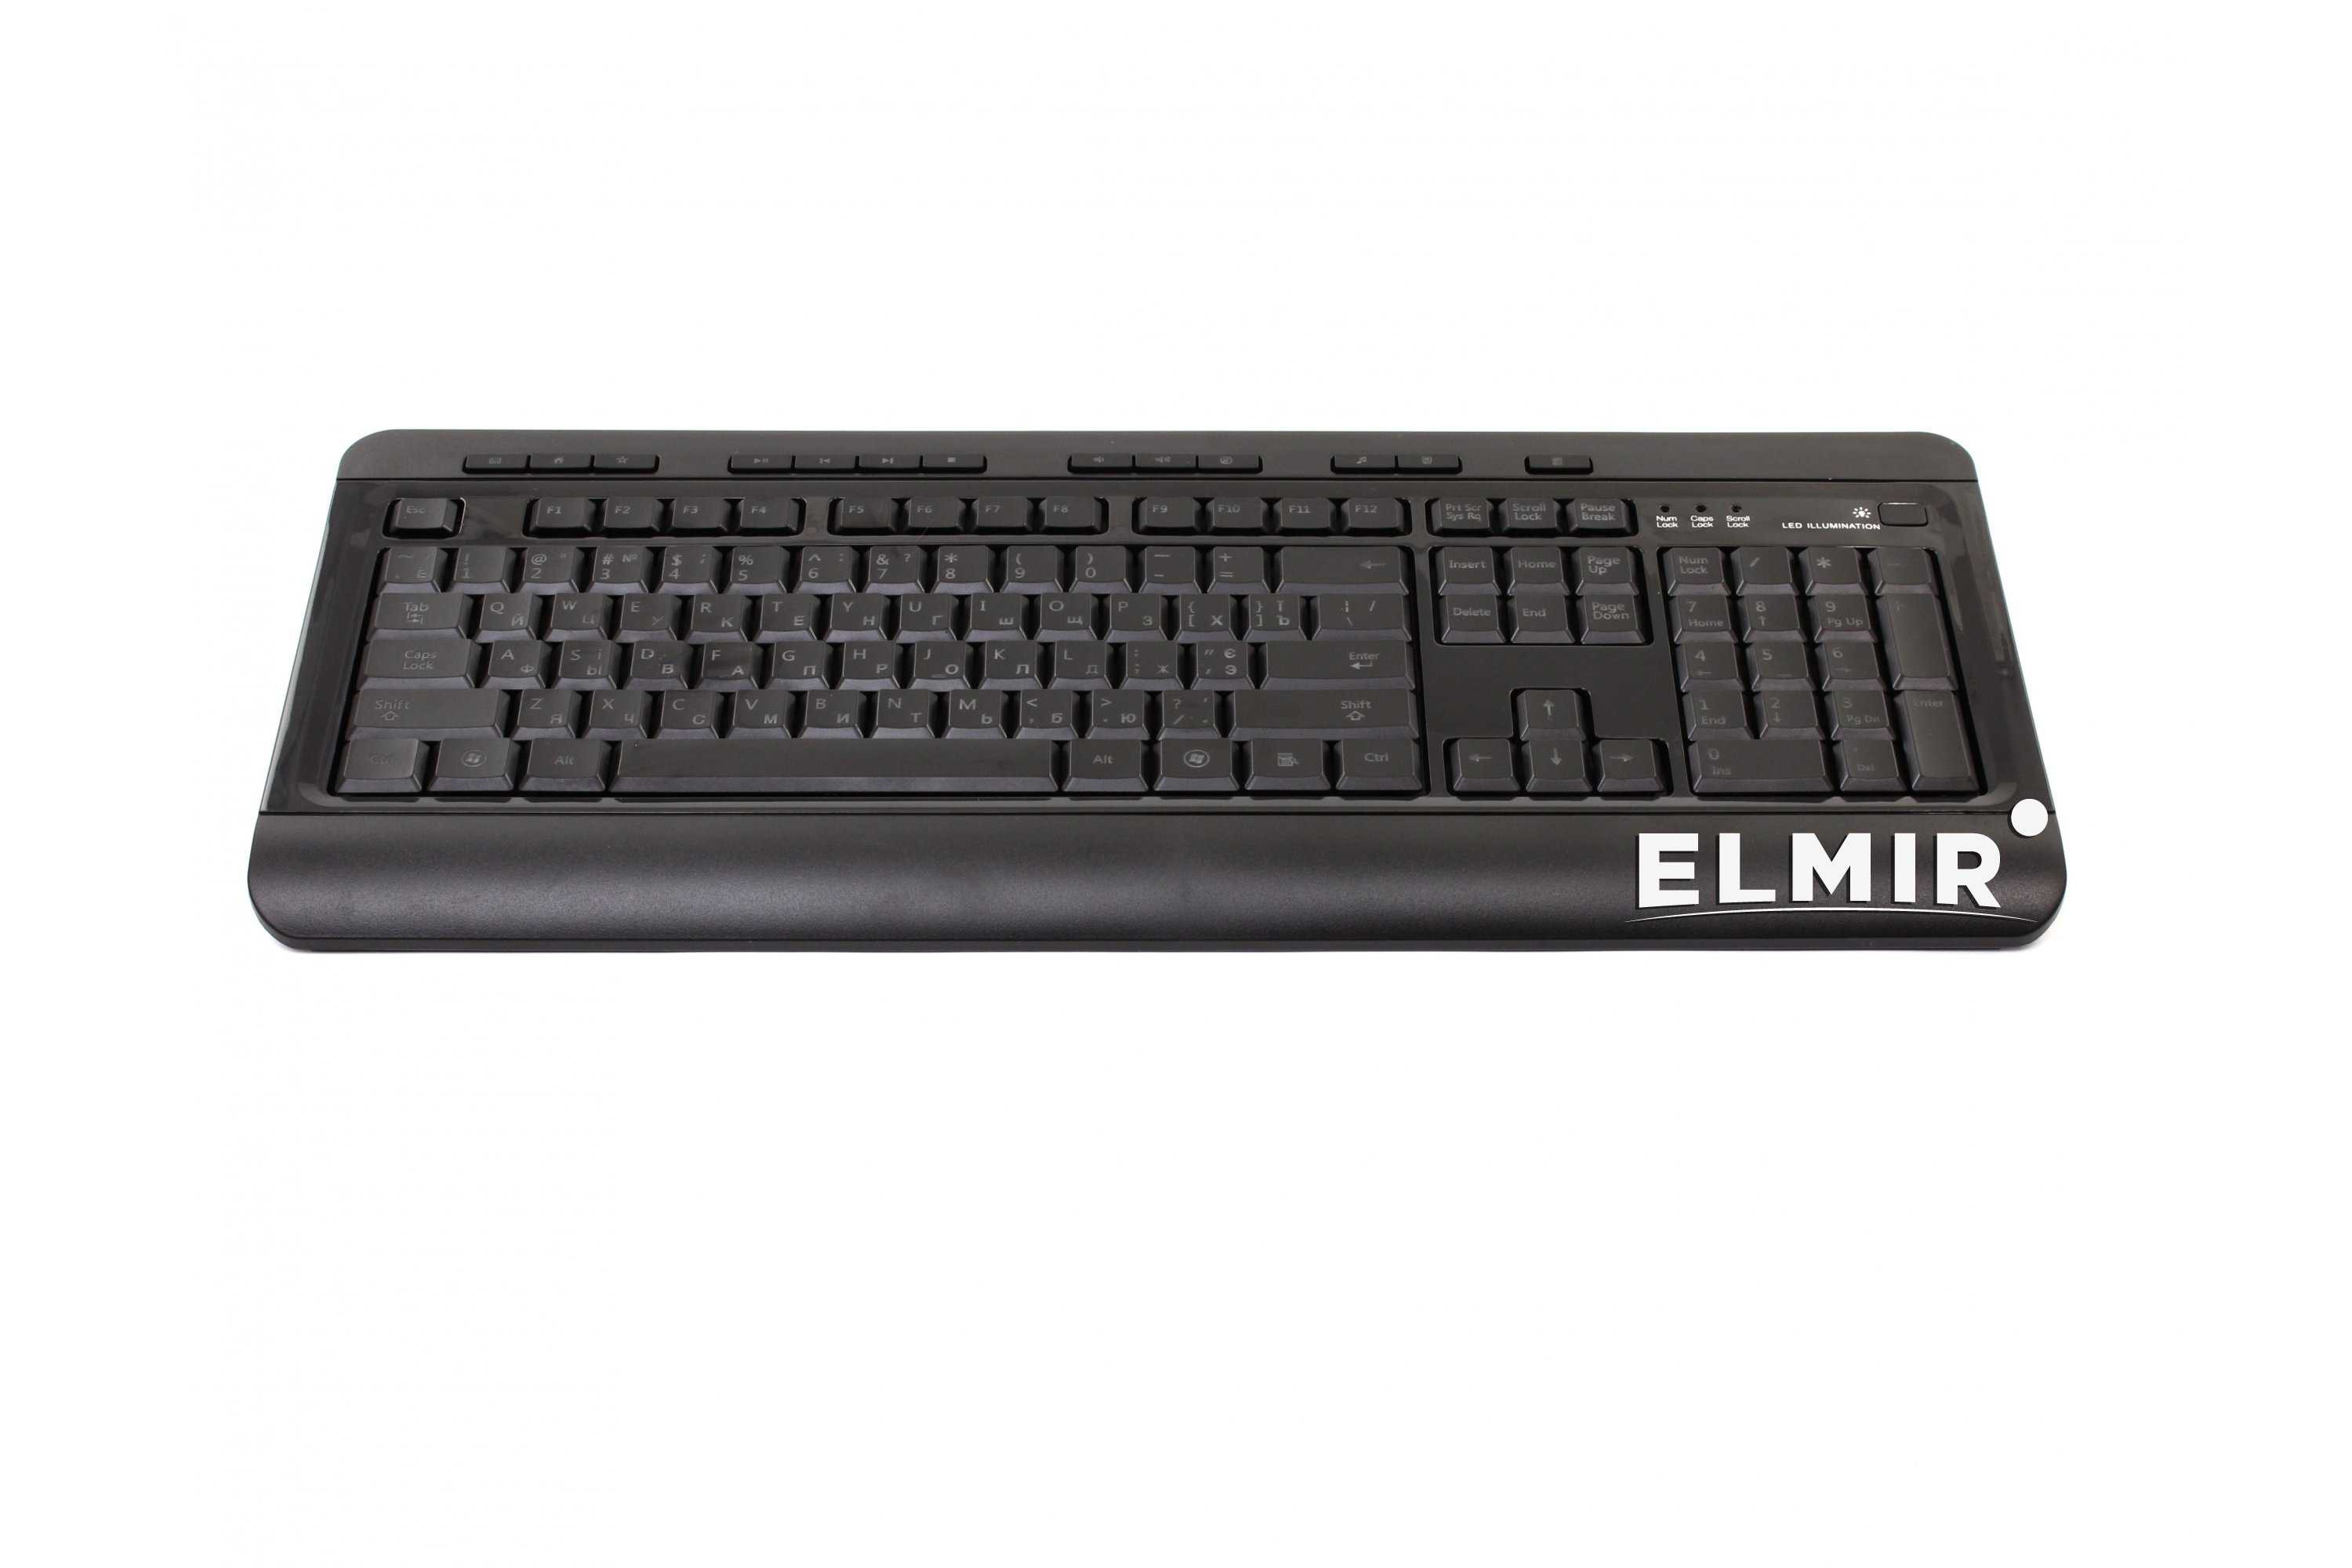 Hq kb-310fmc black usb - купить  в люберцы, скидки, цена, отзывы, обзор, характеристики - клавиатуры